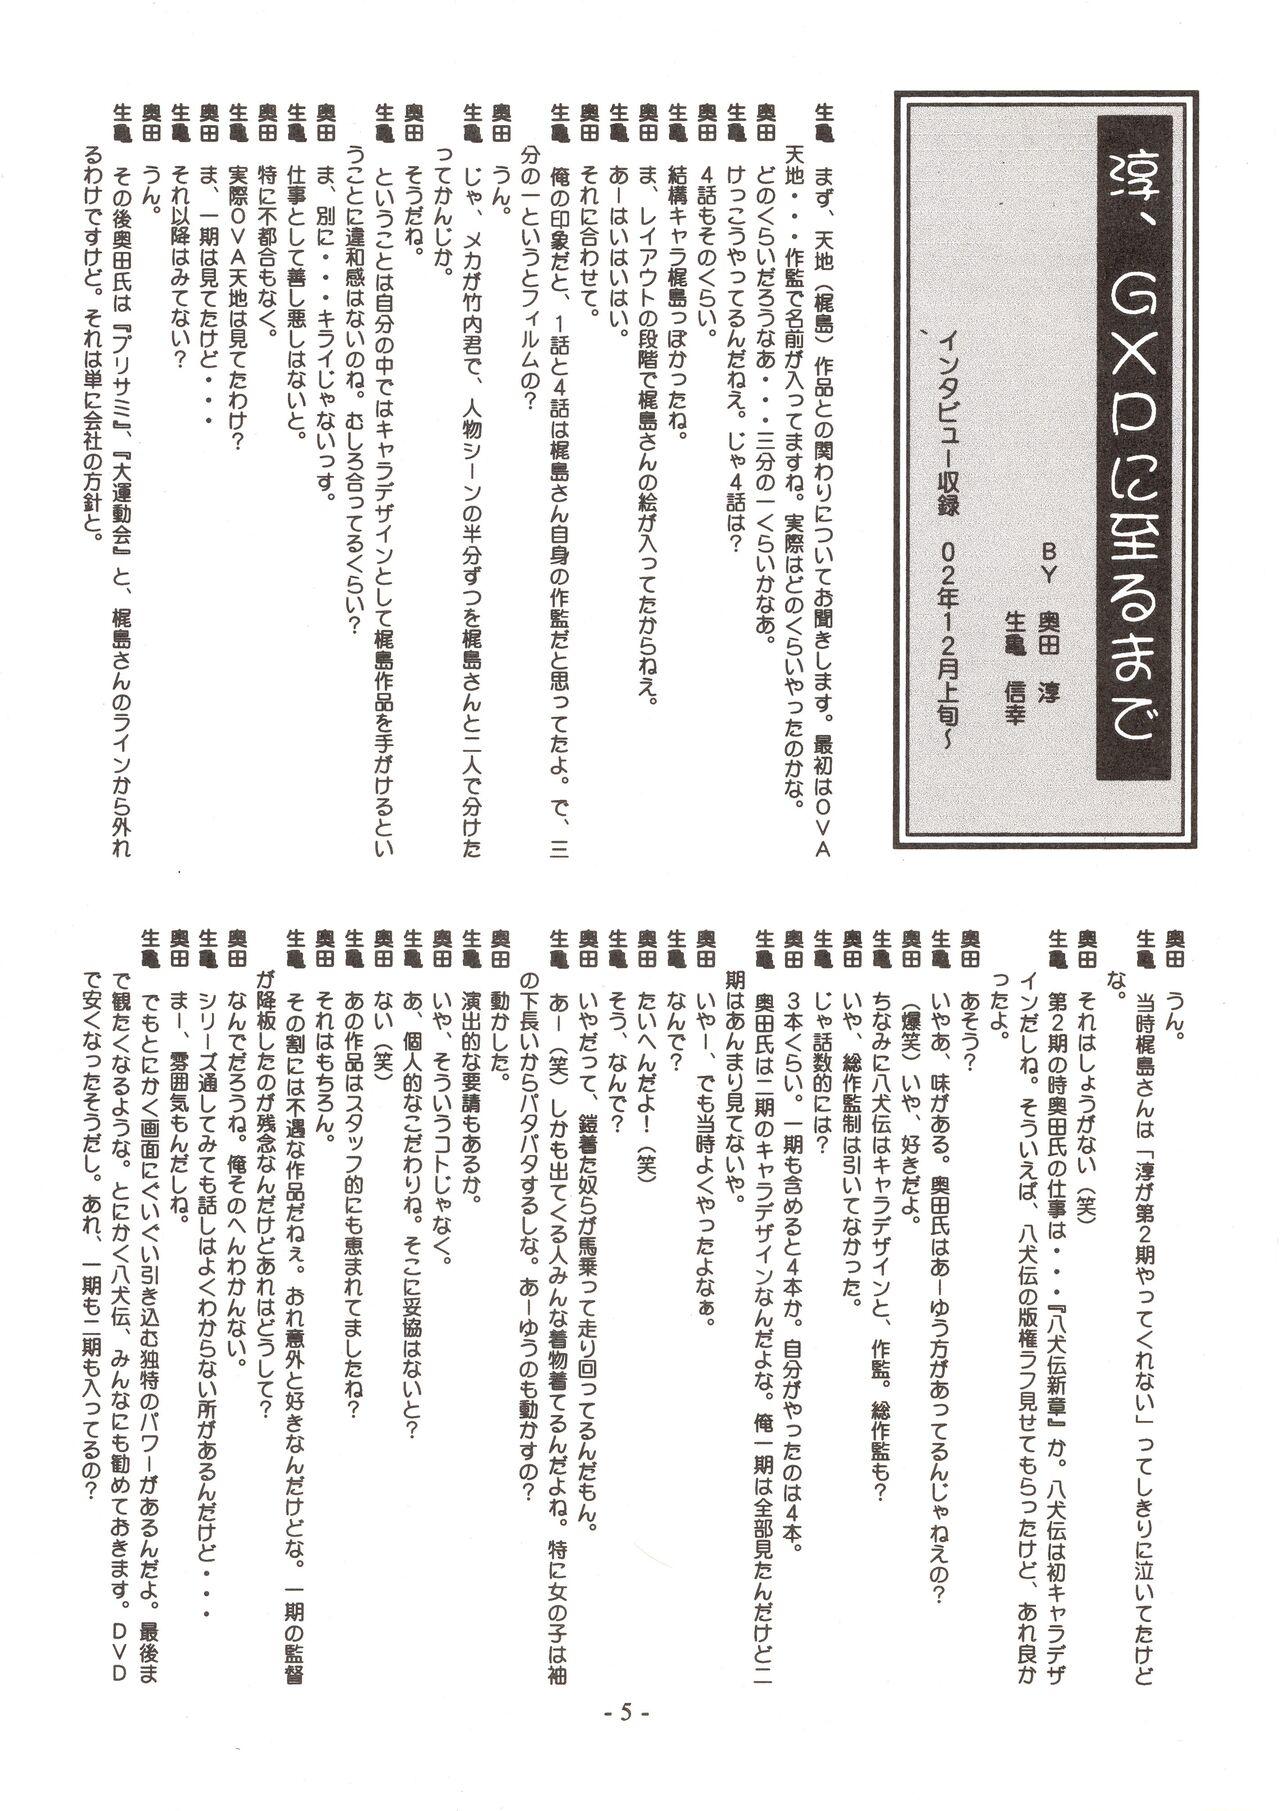 Hairypussy Jun's GXP Okuda Jun Sakuga Nokiroku - Tenchi muyo gxp Nalgas - Page 5